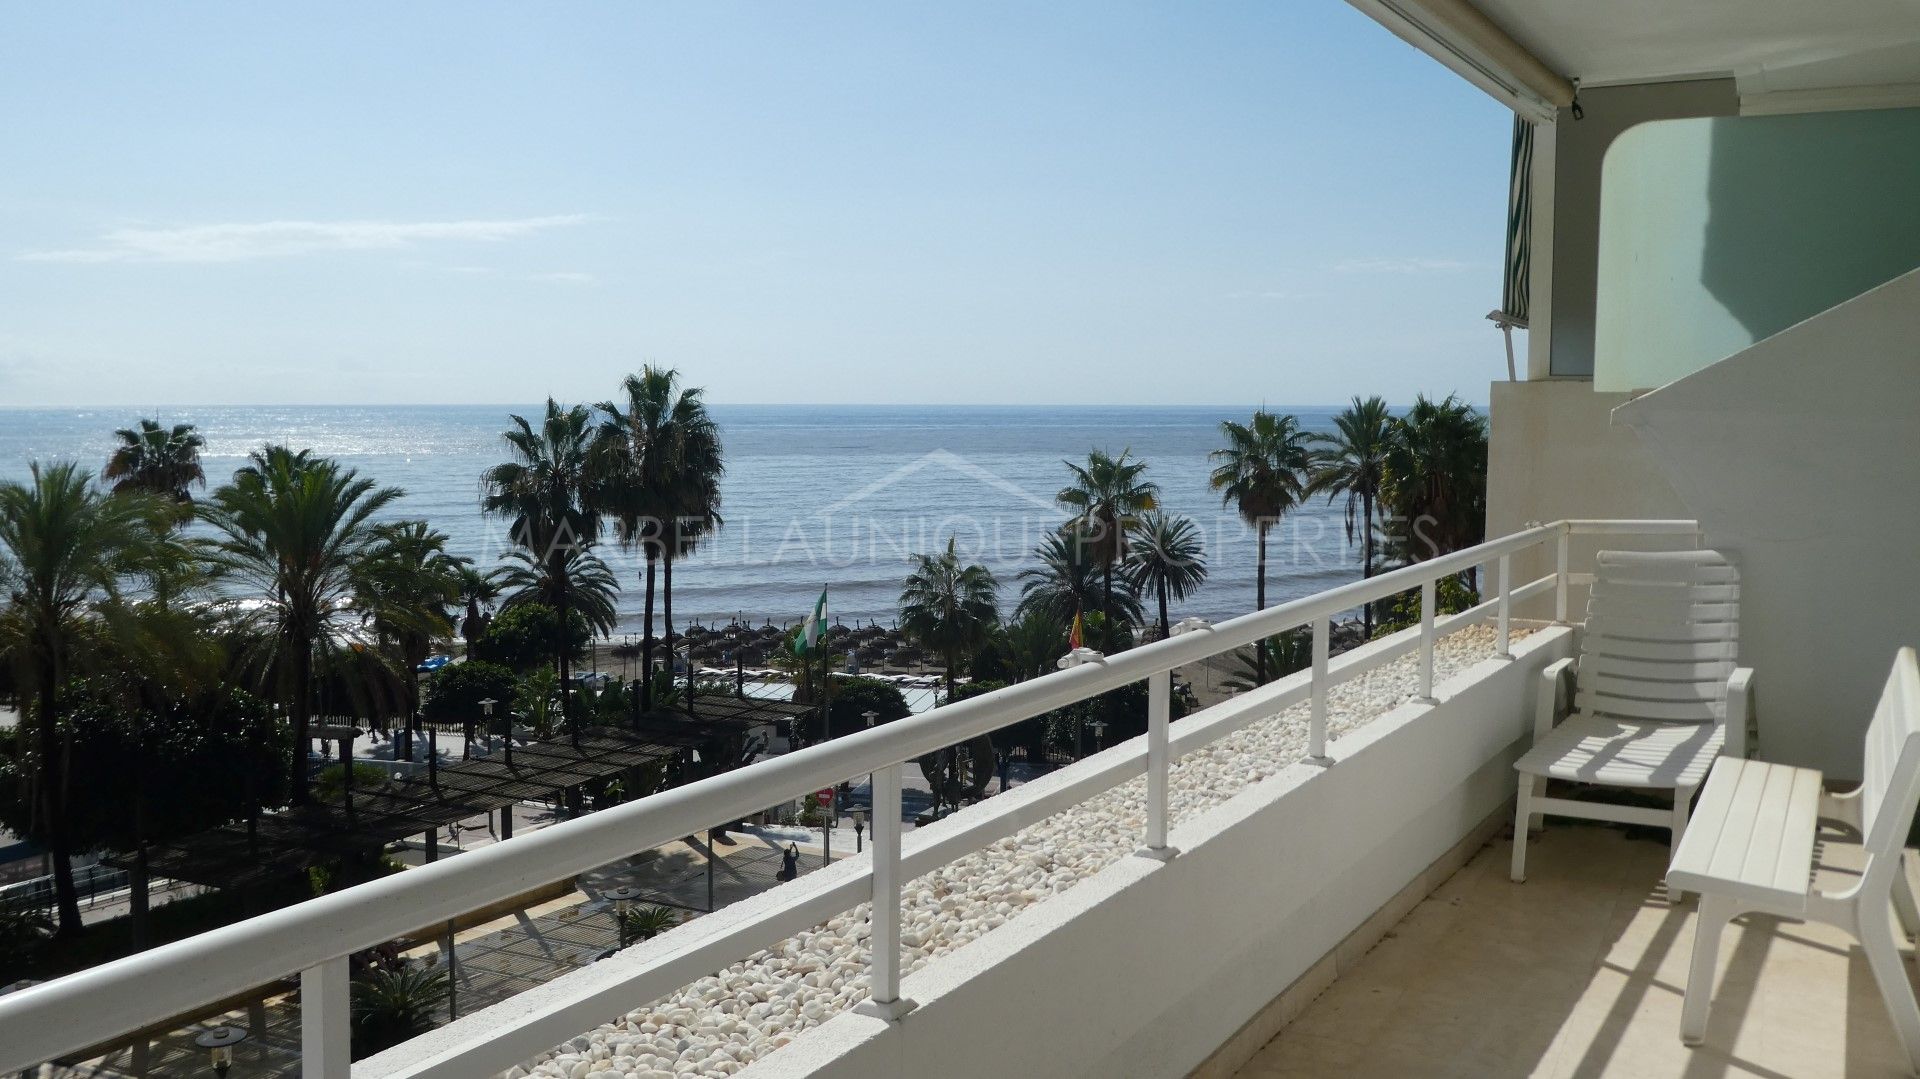 Marbella Centro – Apartamento de playa con 3 dormitorios en alquiler de Larga Temporada